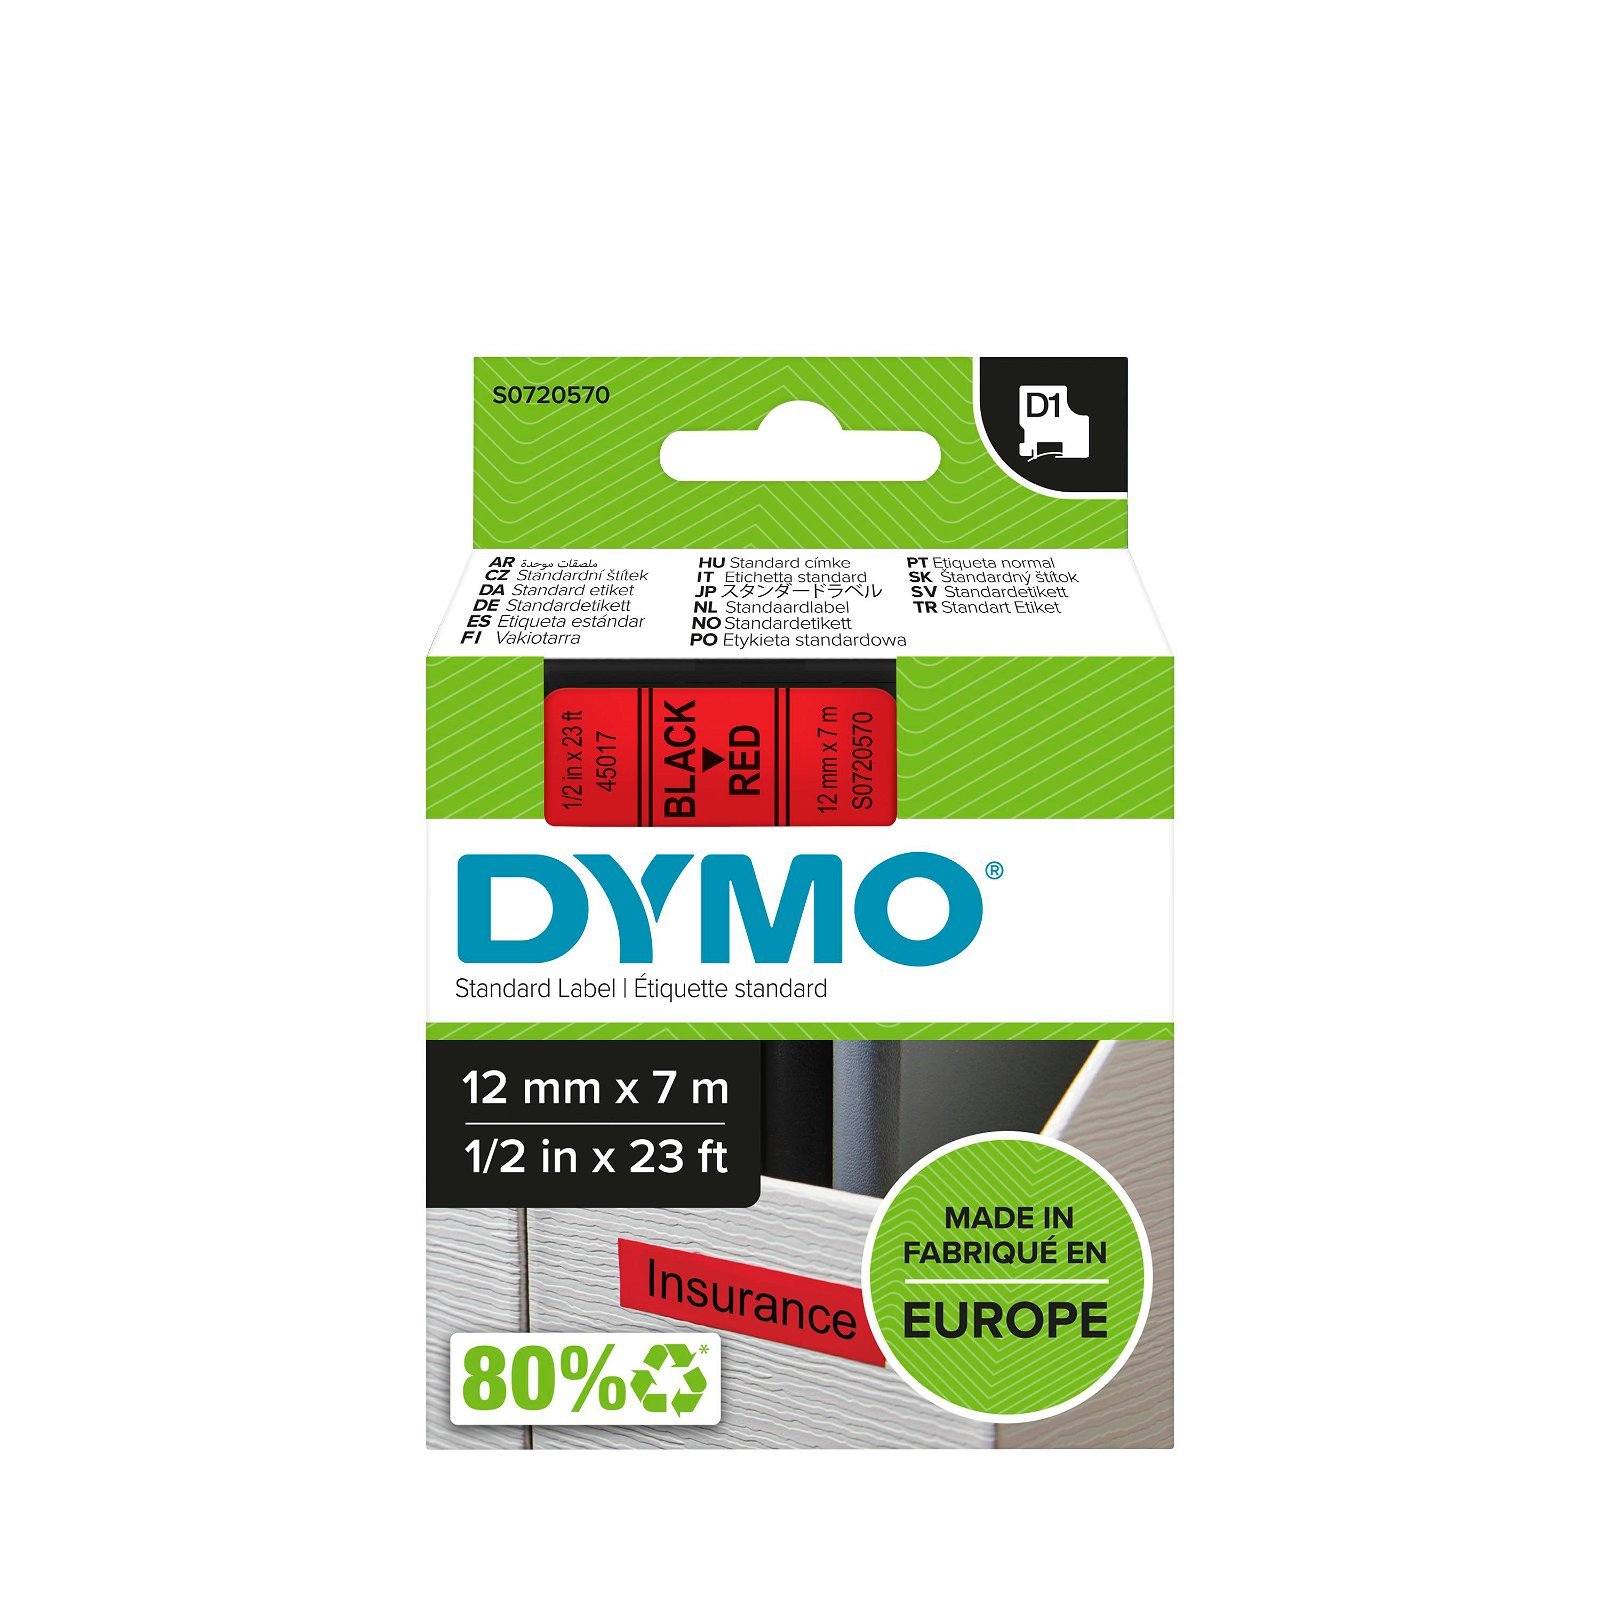 Dymo D1 standard tapekasette 12 mm sort;rod Polyester